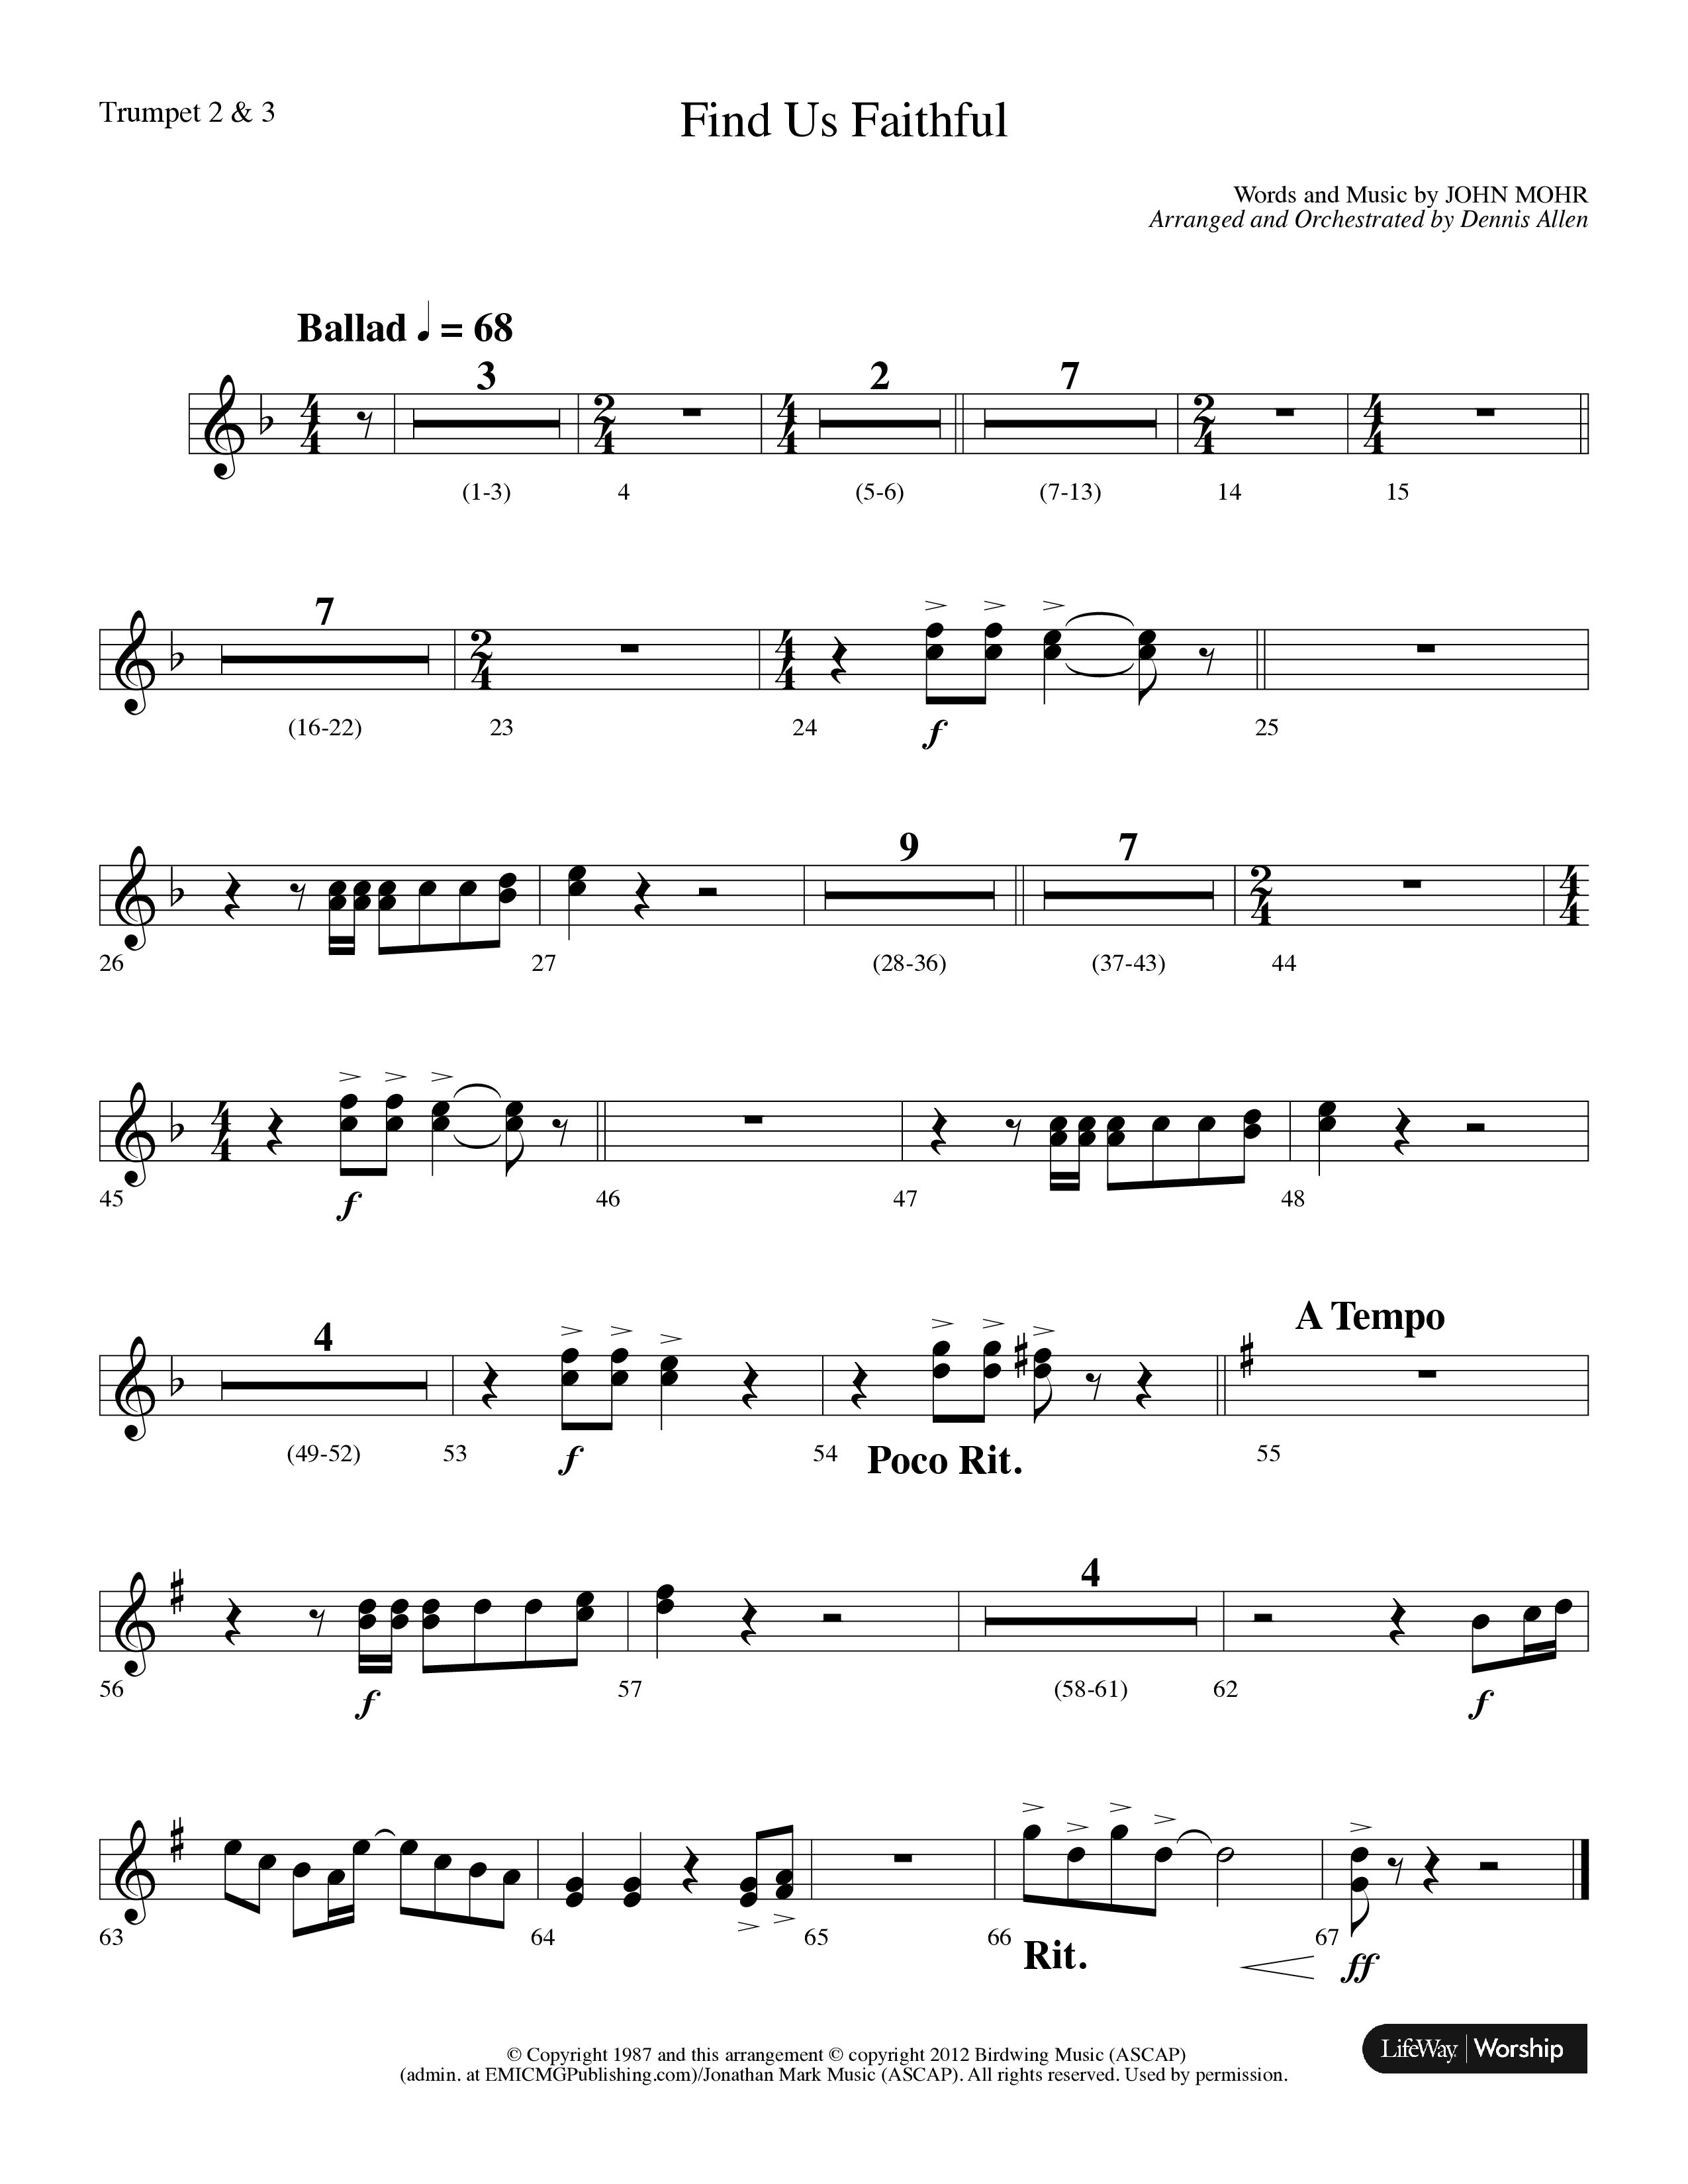 Find Us Faithful (Choral Anthem SATB) Trumpet 2/3 (Lifeway Choral / Arr. Dennis Allen)